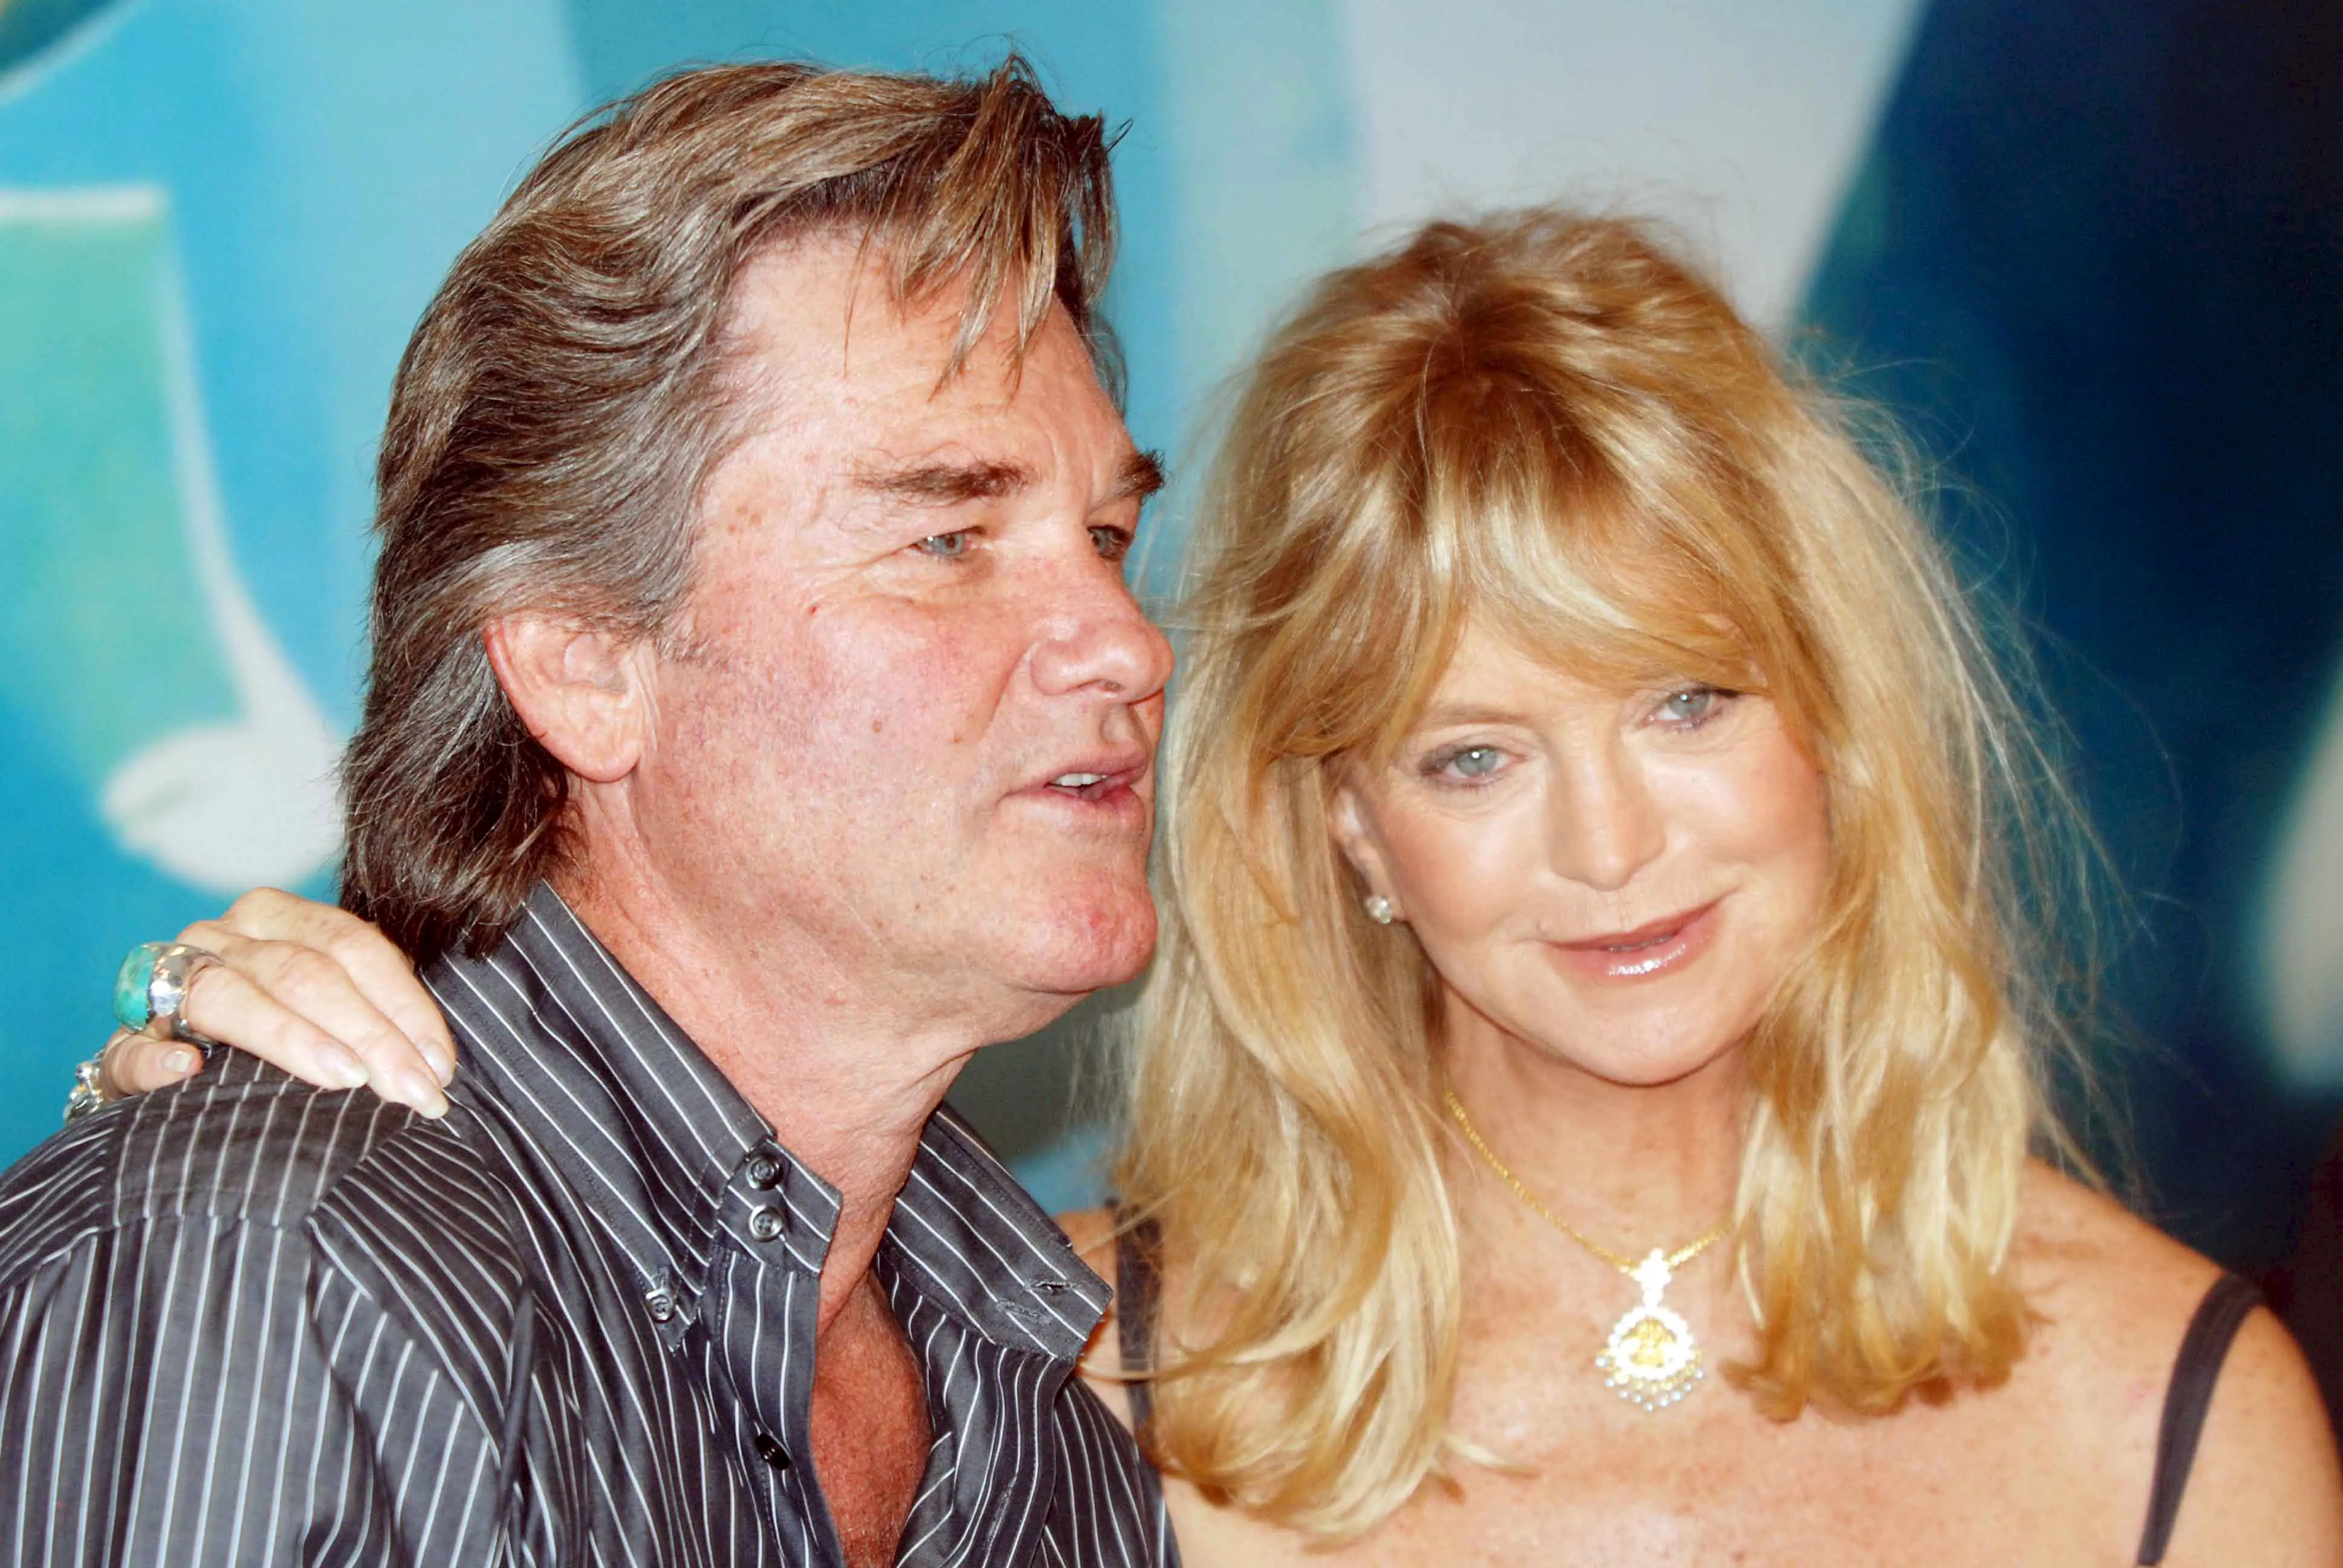 Goldie Hawn dan Kurt Russell pertama kali bertemu pada tahun 1983 silam. Mereka pun mulai berkencan saat produksi film kedua mereka, film komedi romantis yang berjudul  ‘Swing Shift’ pada tahun 1984. (Bintang/EPA)